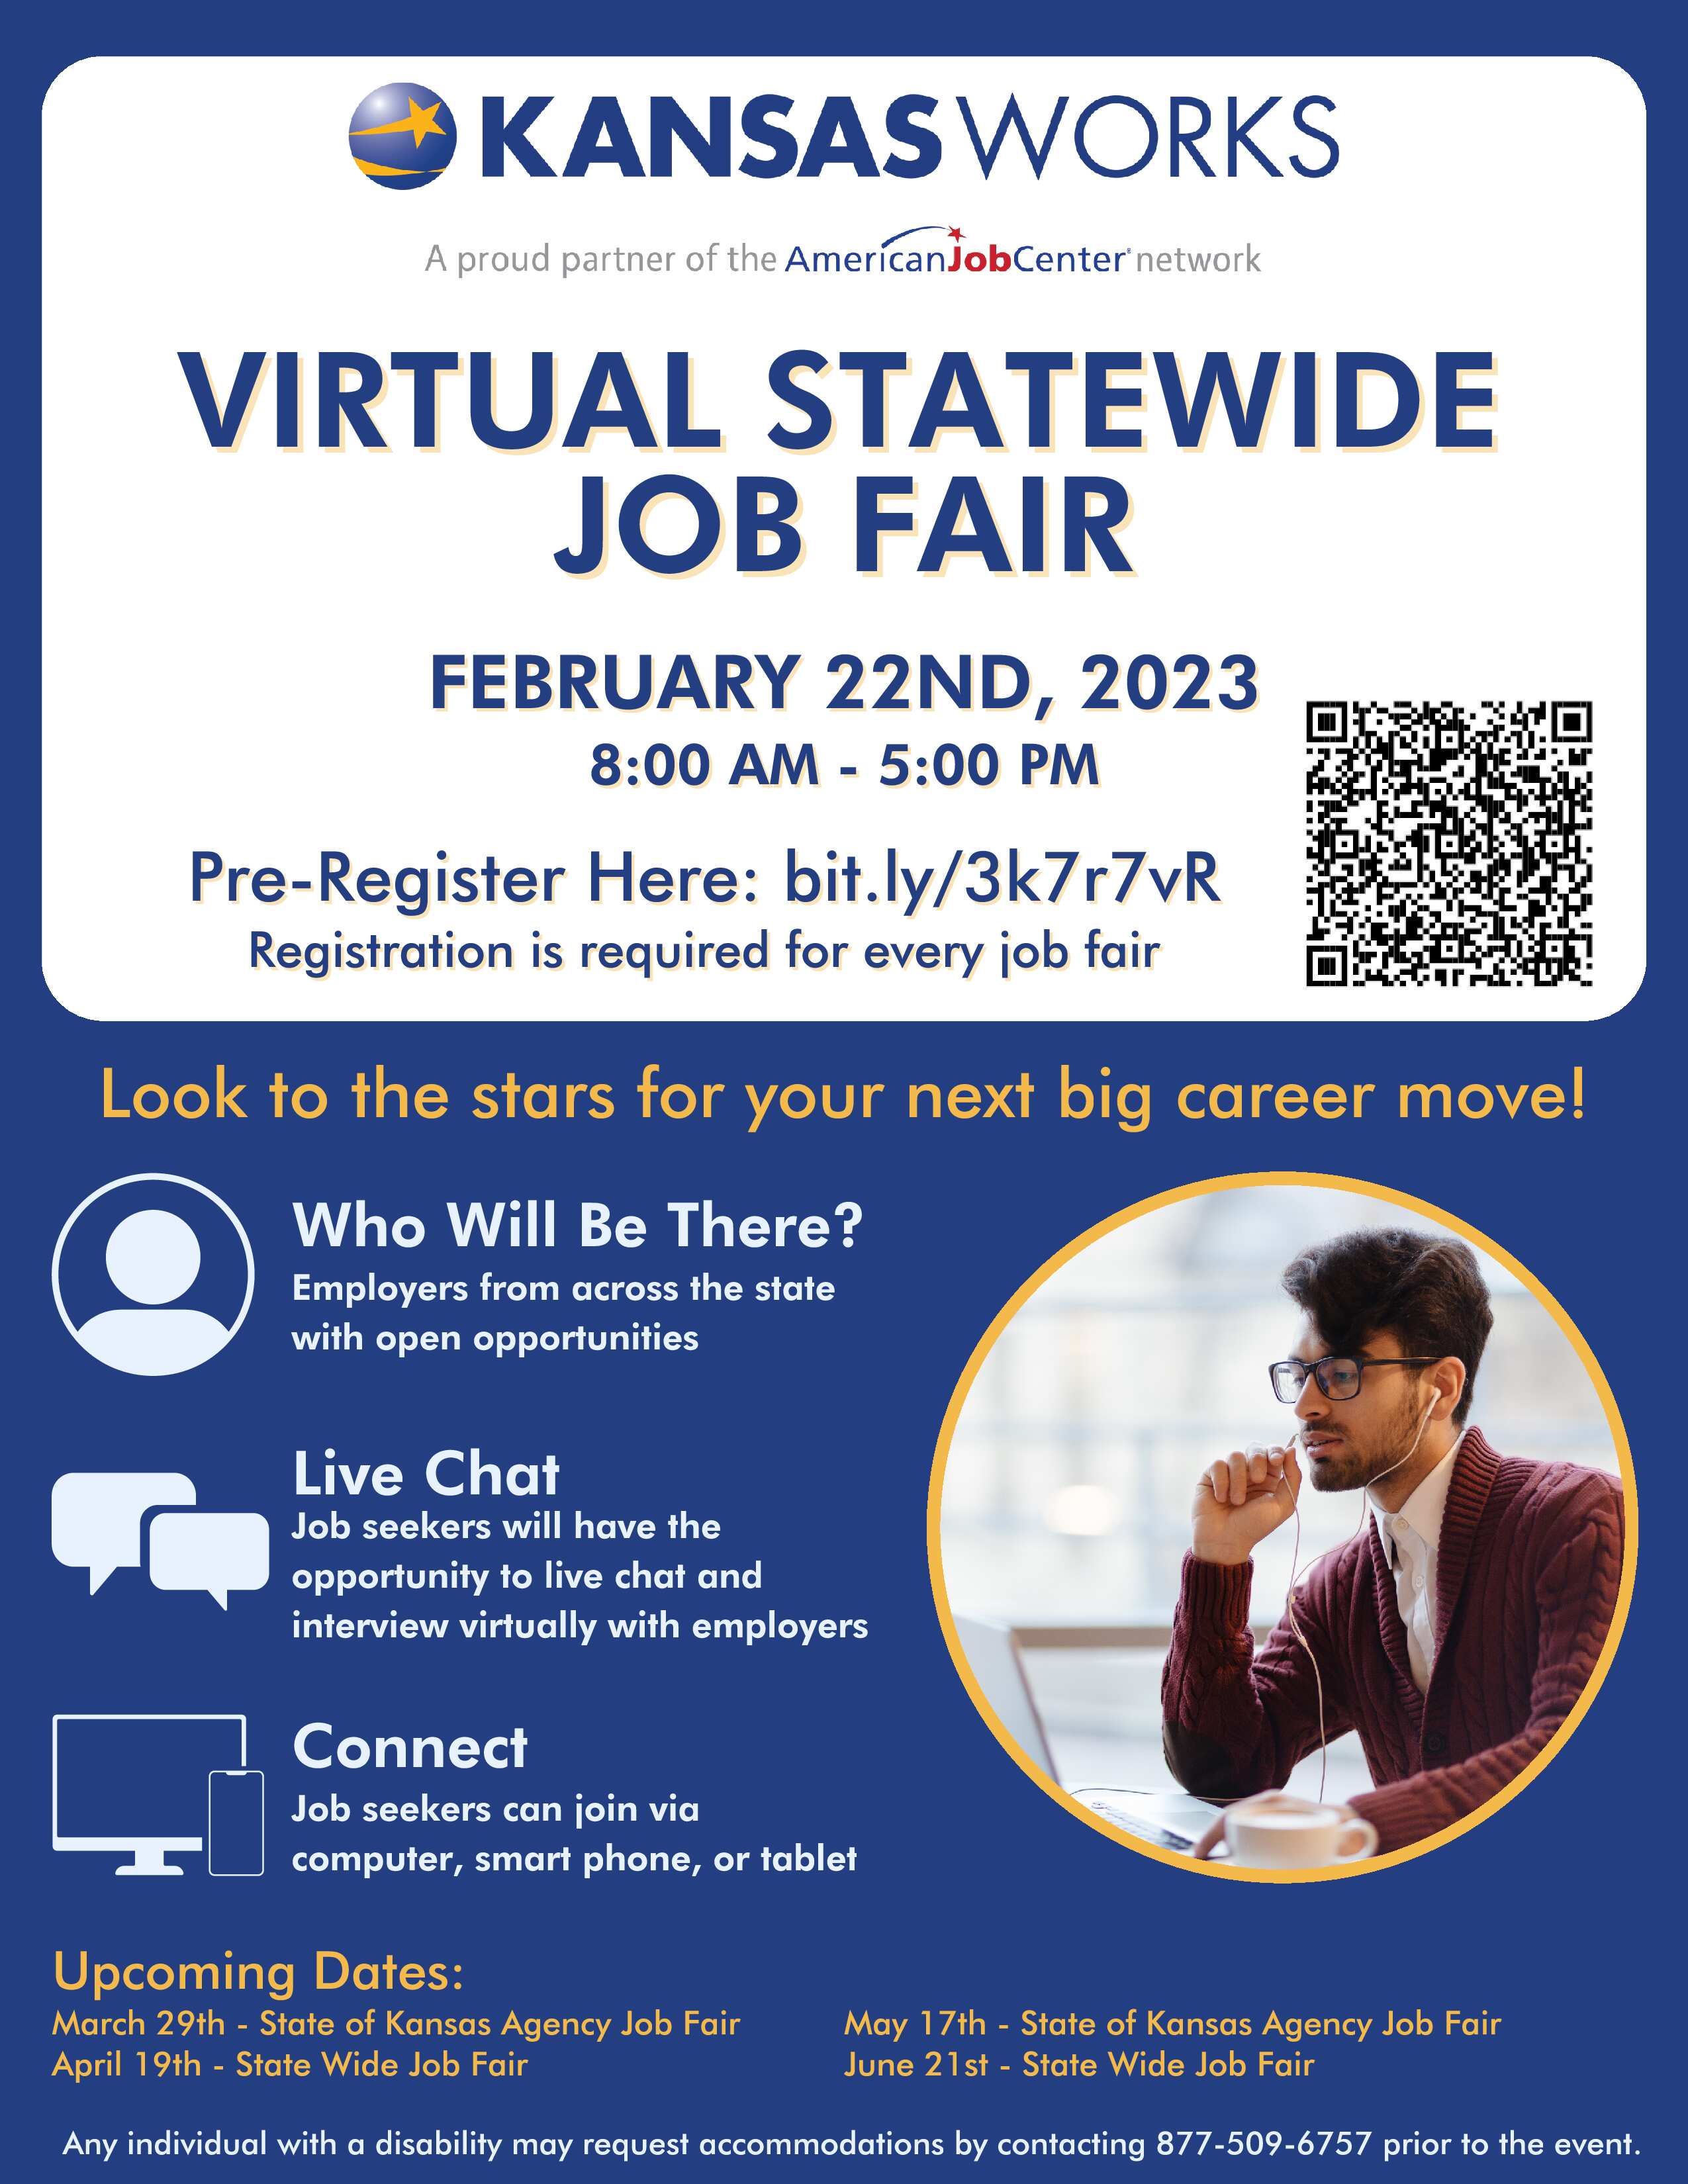 KANSASWORKS Virtual Statewide Job Fair